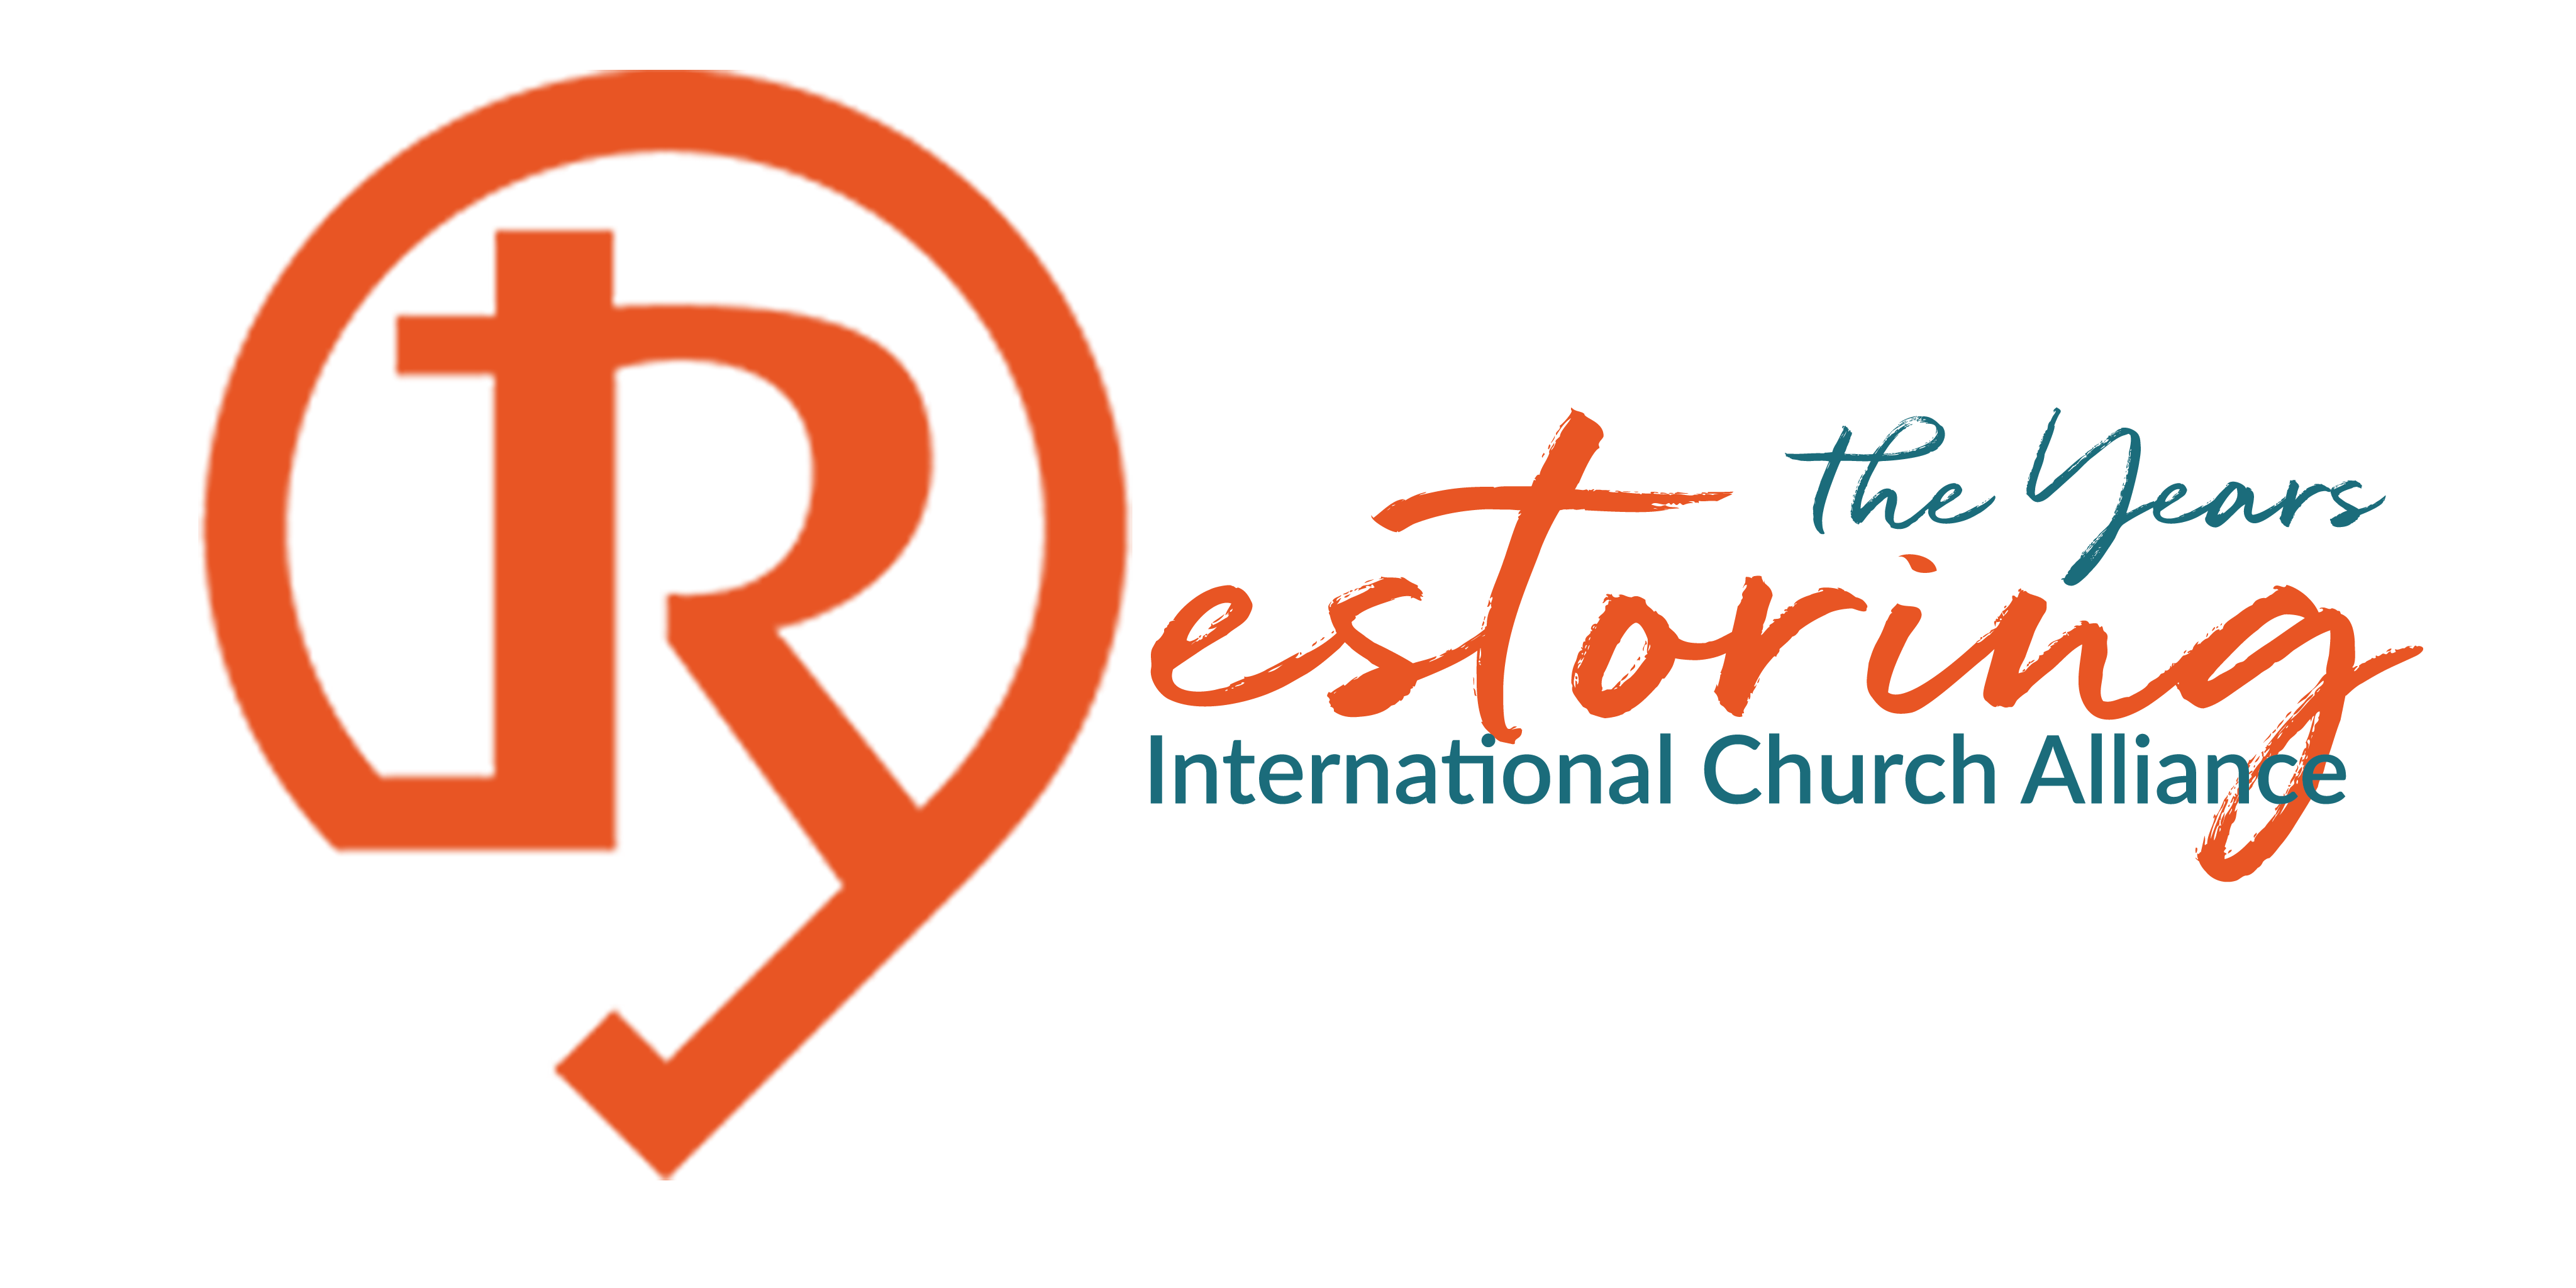 RTYGM International Church Alliance